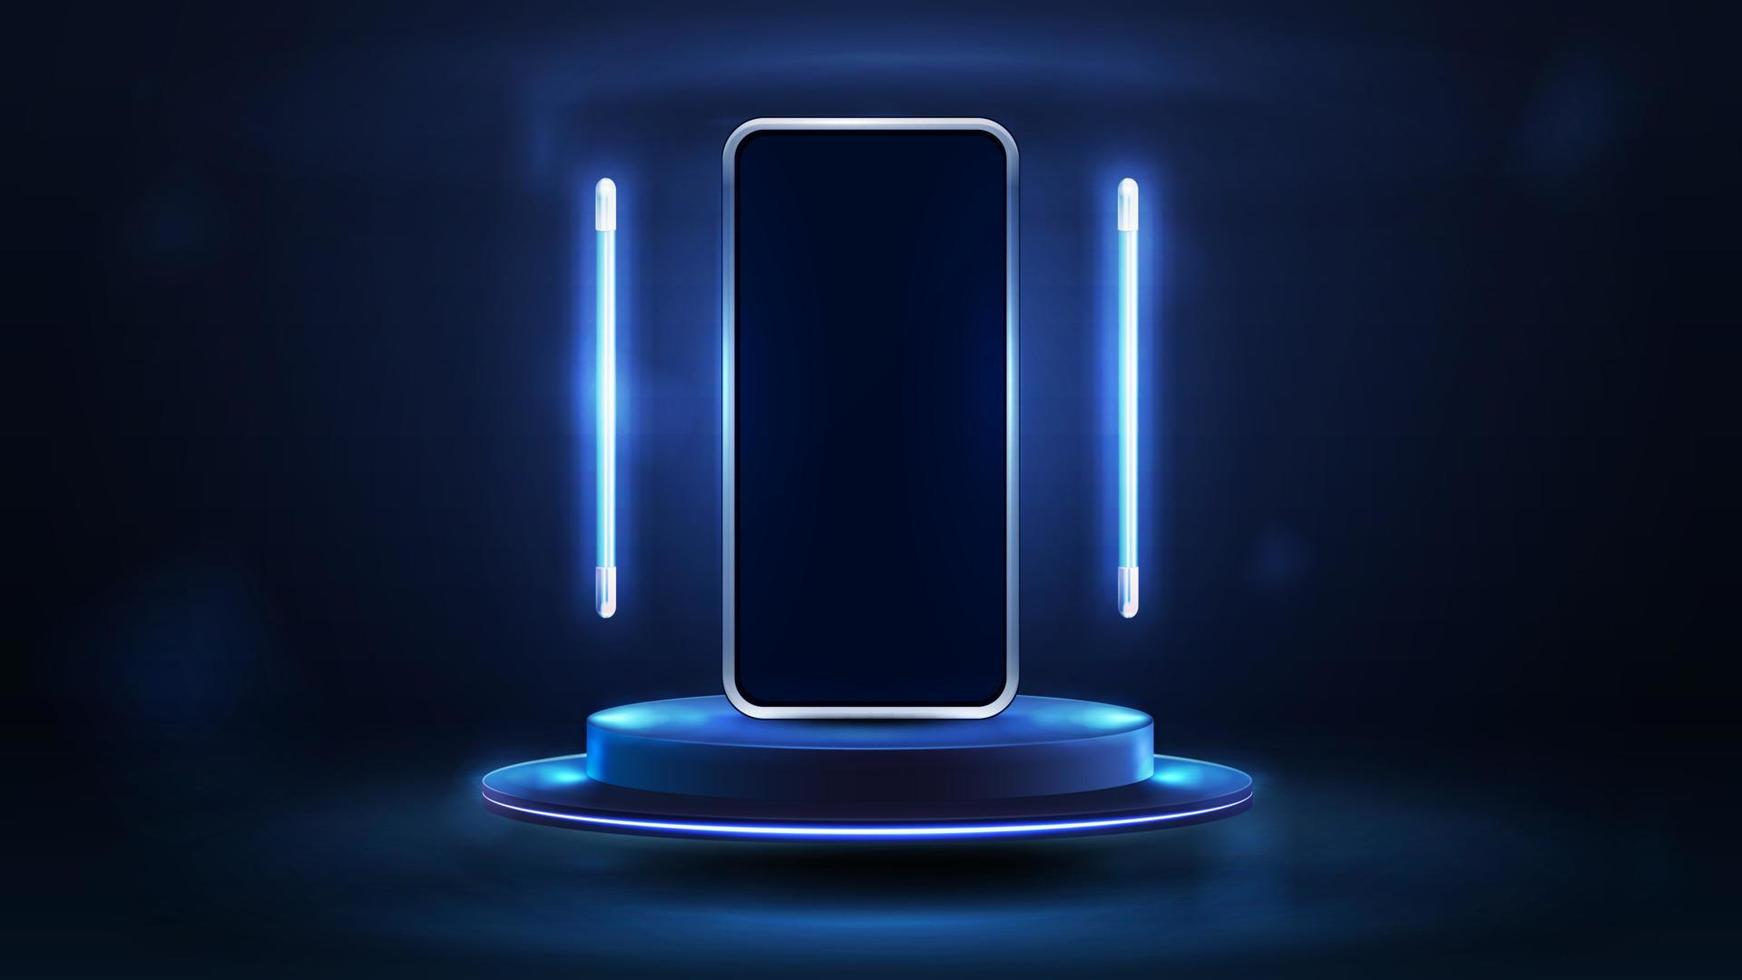 smartphone no pódio azul flutuando no ar em cena escura com lâmpadas de linha voadora azul ao redor, ilustração vetorial realista 3d. vetor